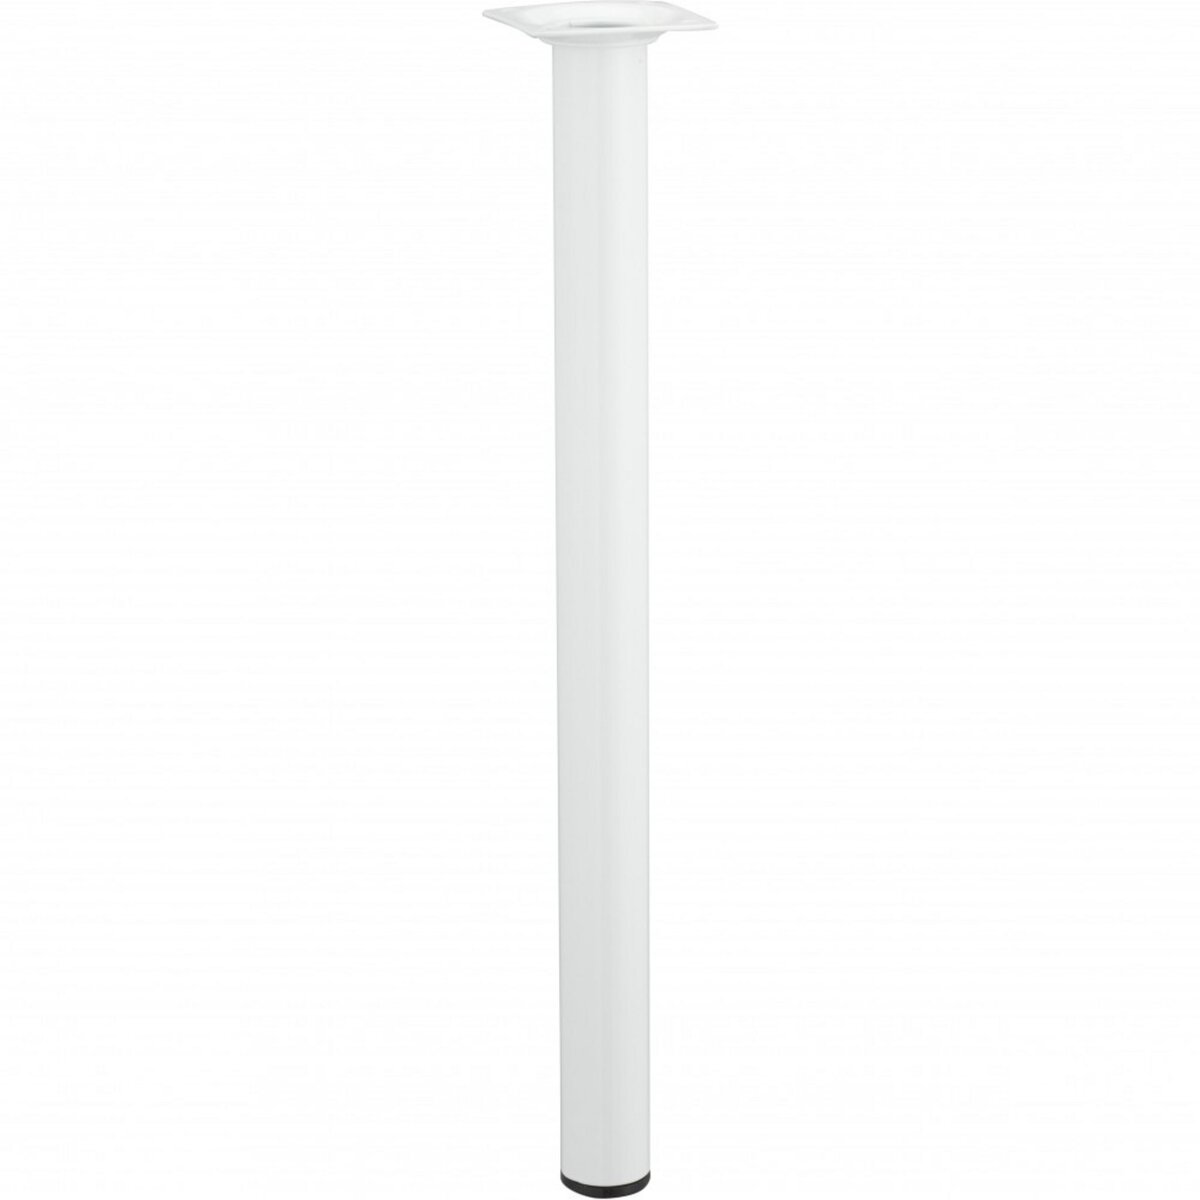 CENTRALE BRICO Pied de table basse cylindrique fixe acier époxy blanc, 40 cm